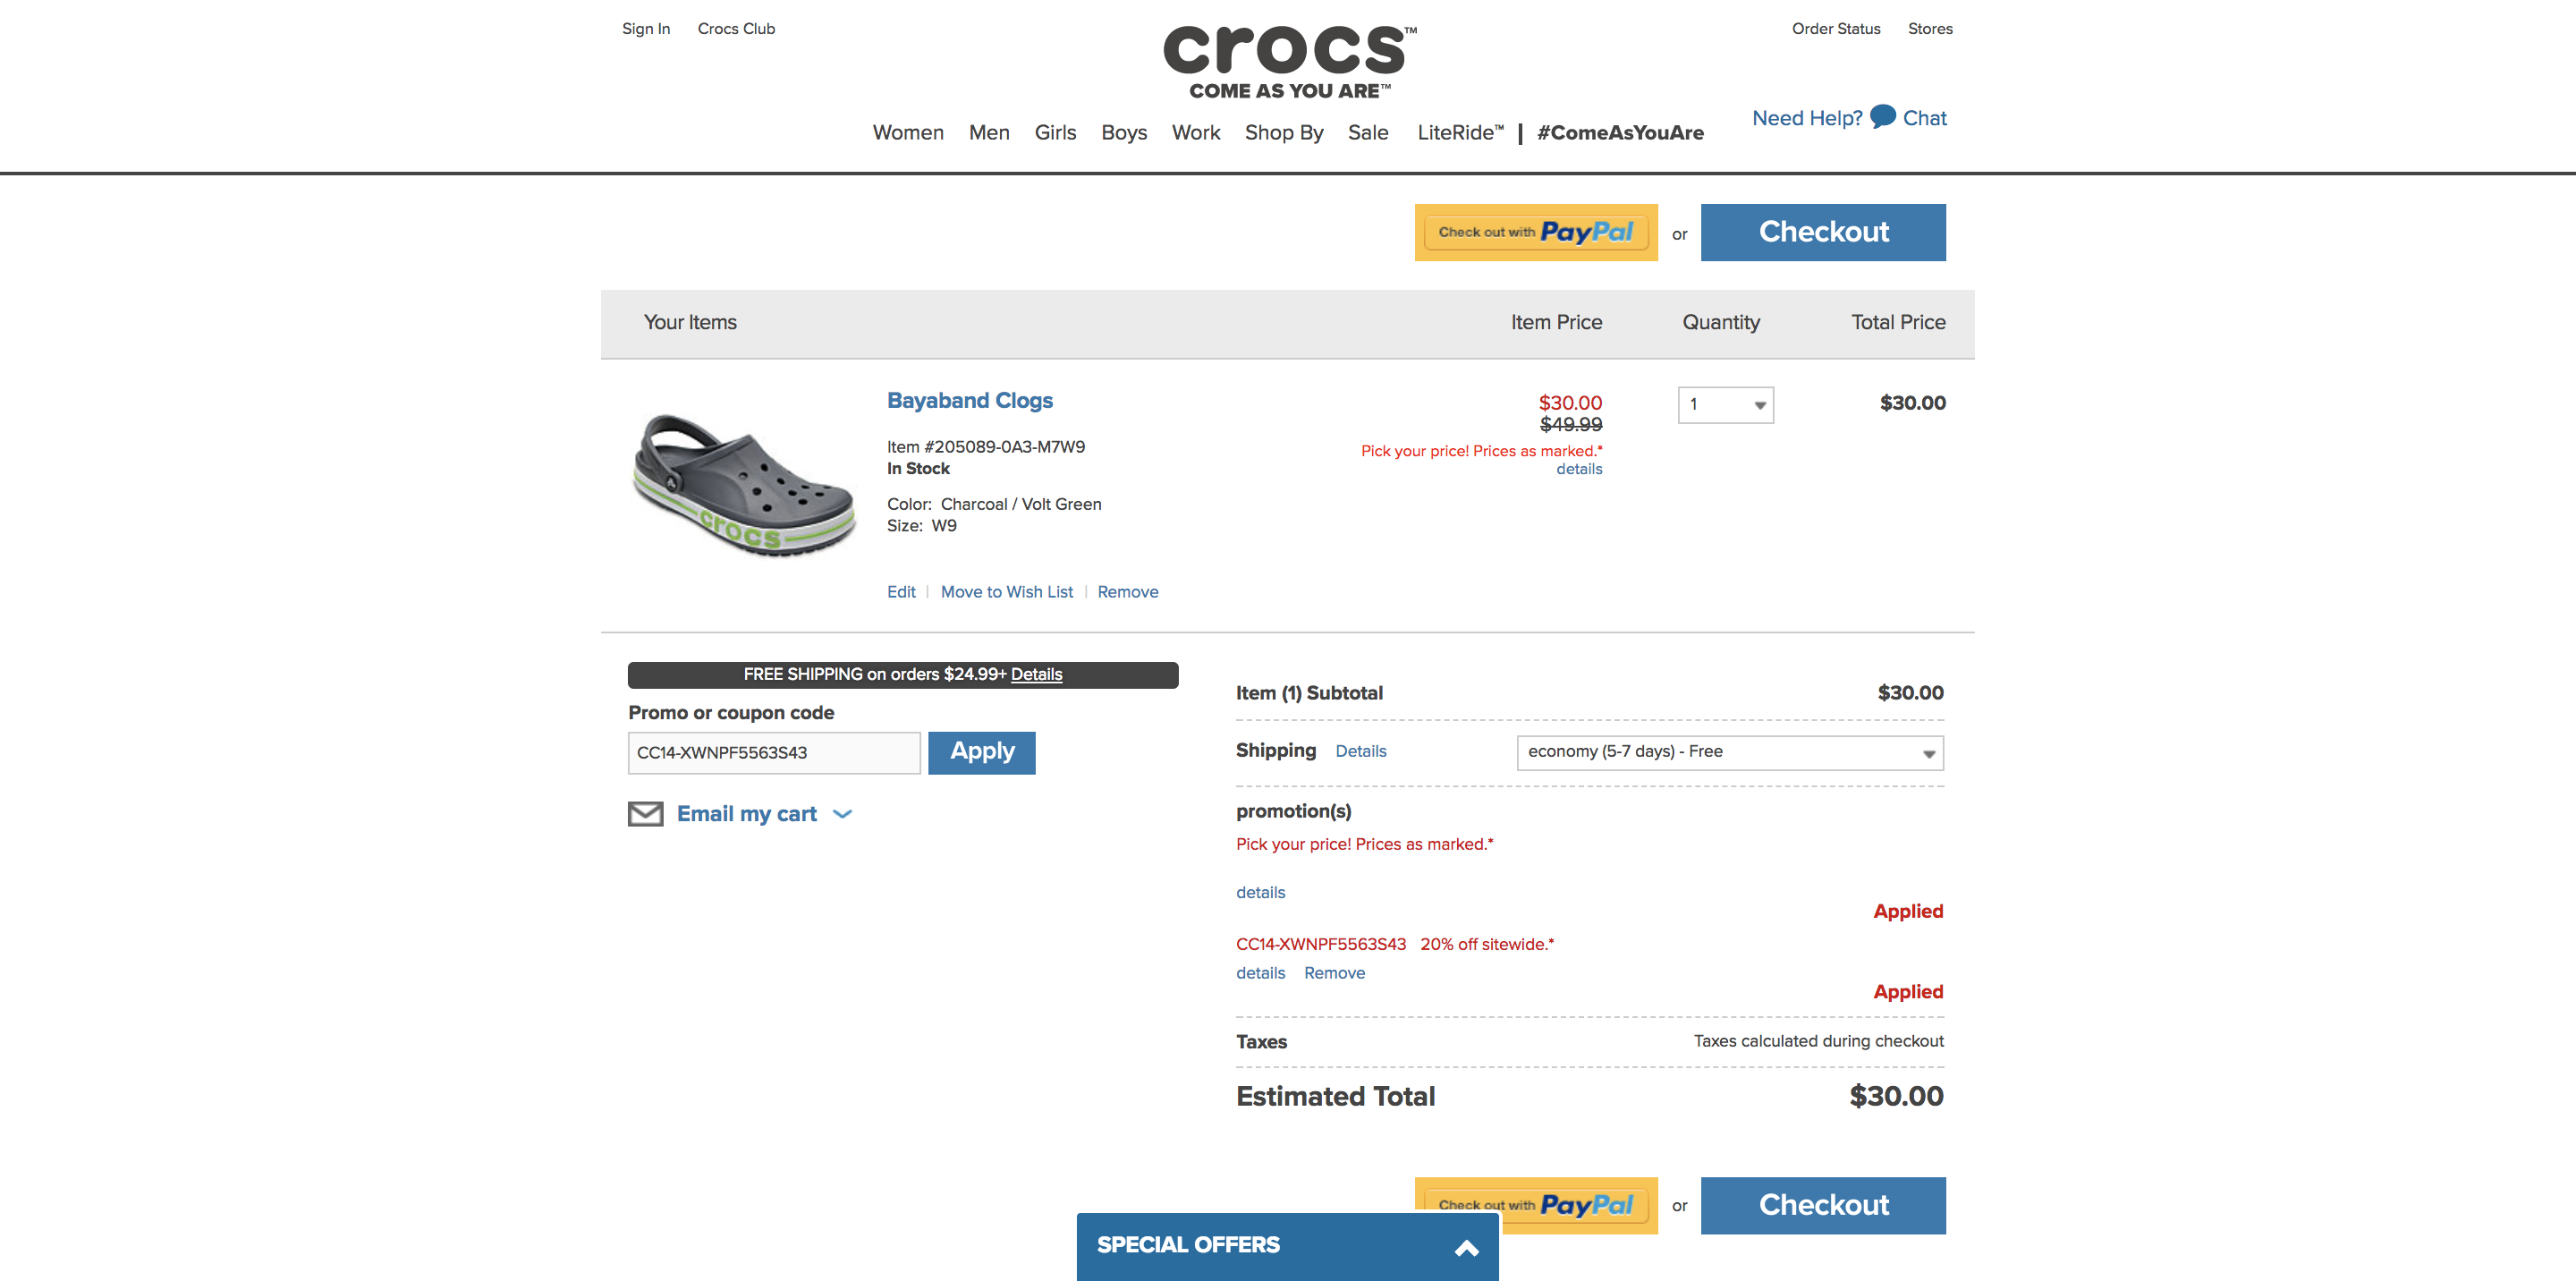 crocs website coupon code